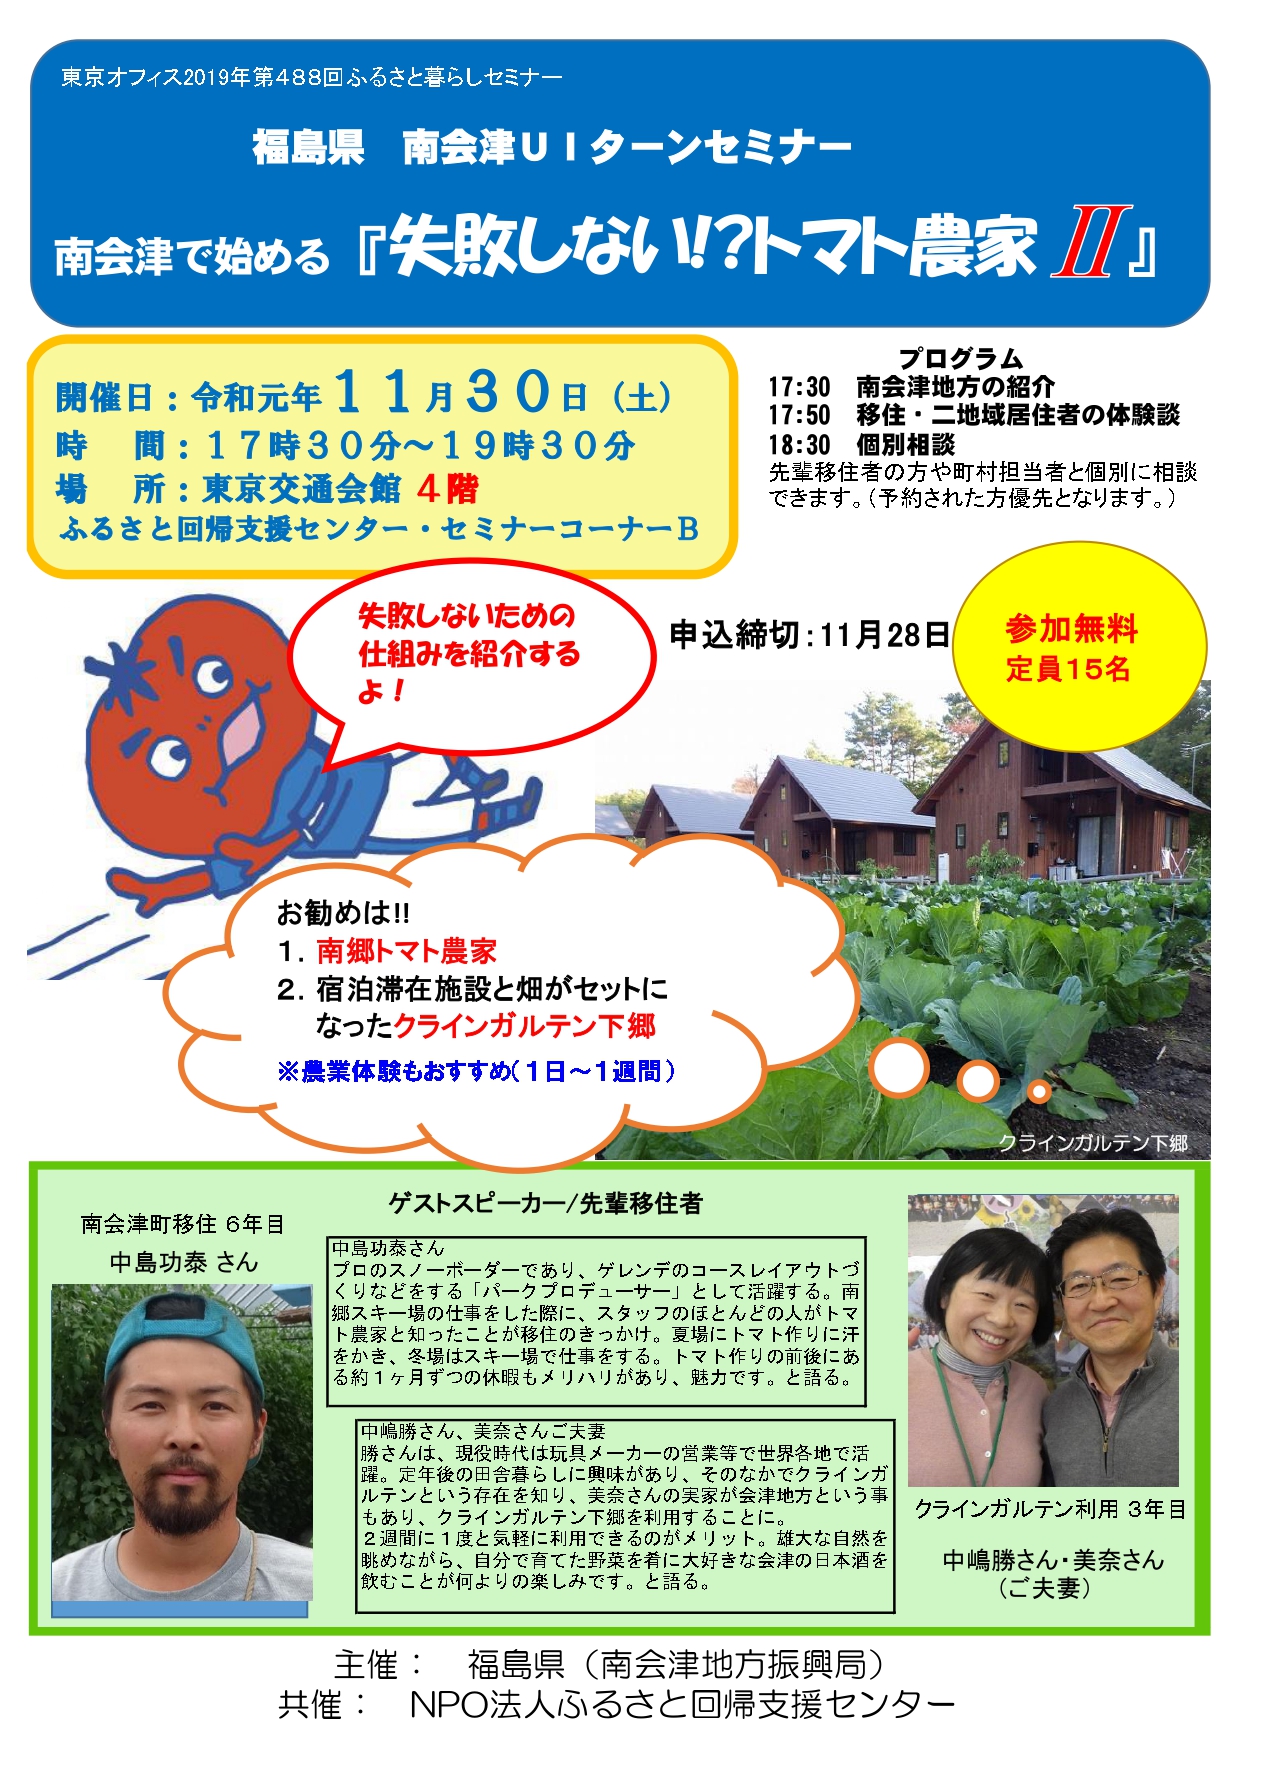 南会津で始める『失敗しない！？トマト農家?』 | 移住関連イベント情報